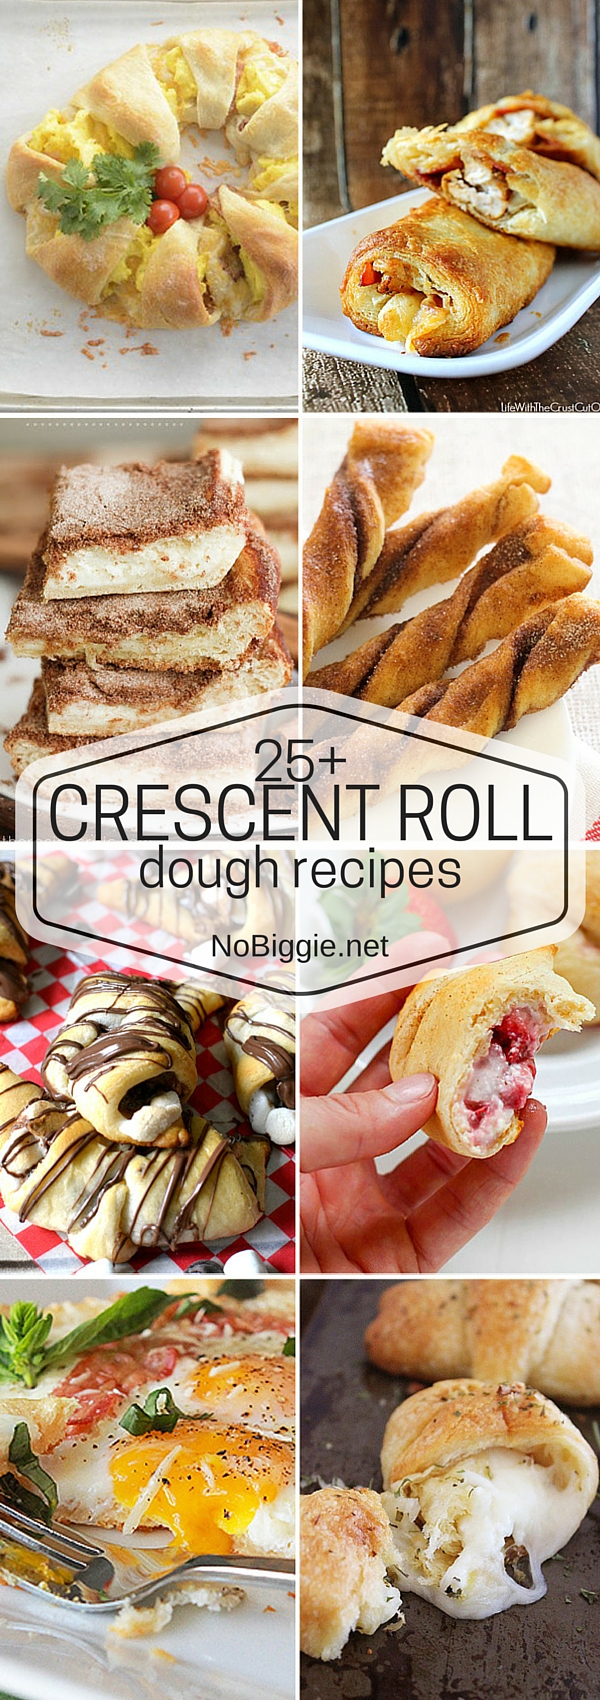 25+ Crescent Roll Dough Recipes | NoBiggie.net